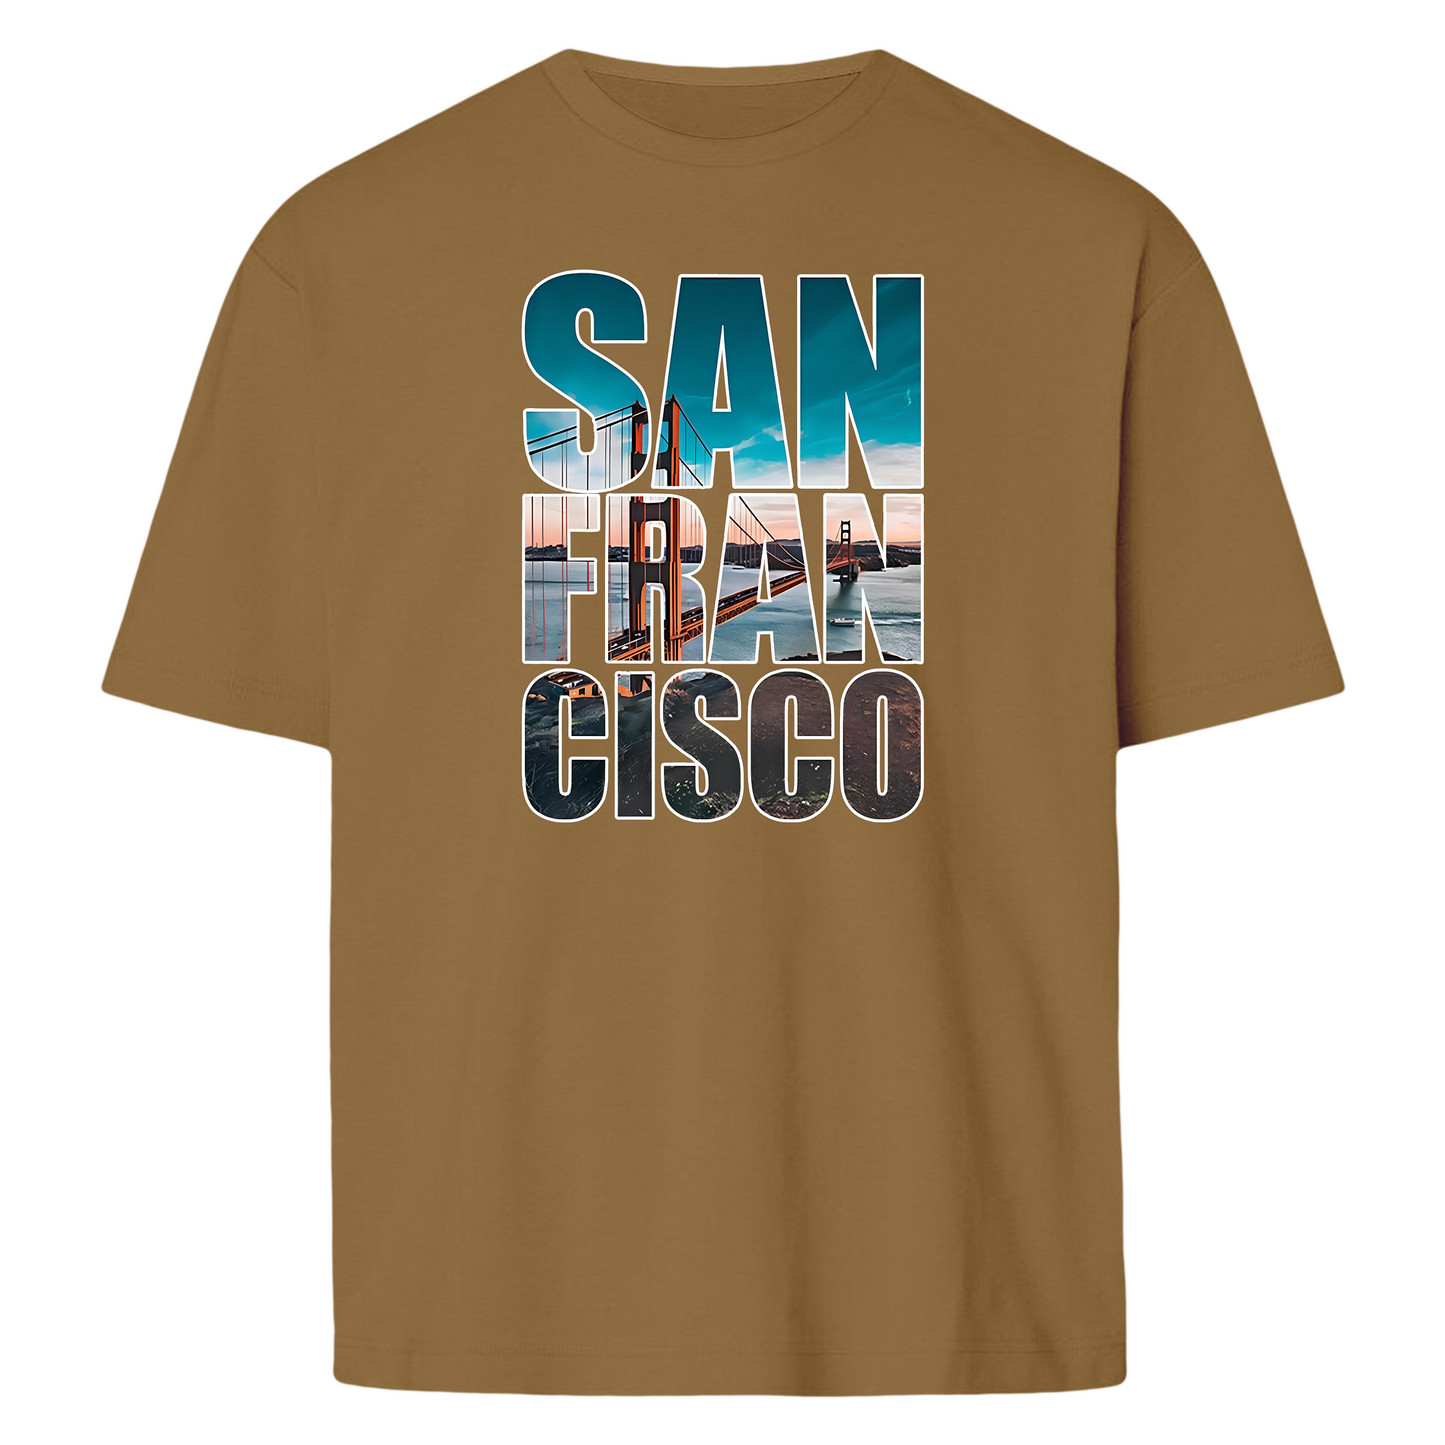 Sanfransisco - T-shirt